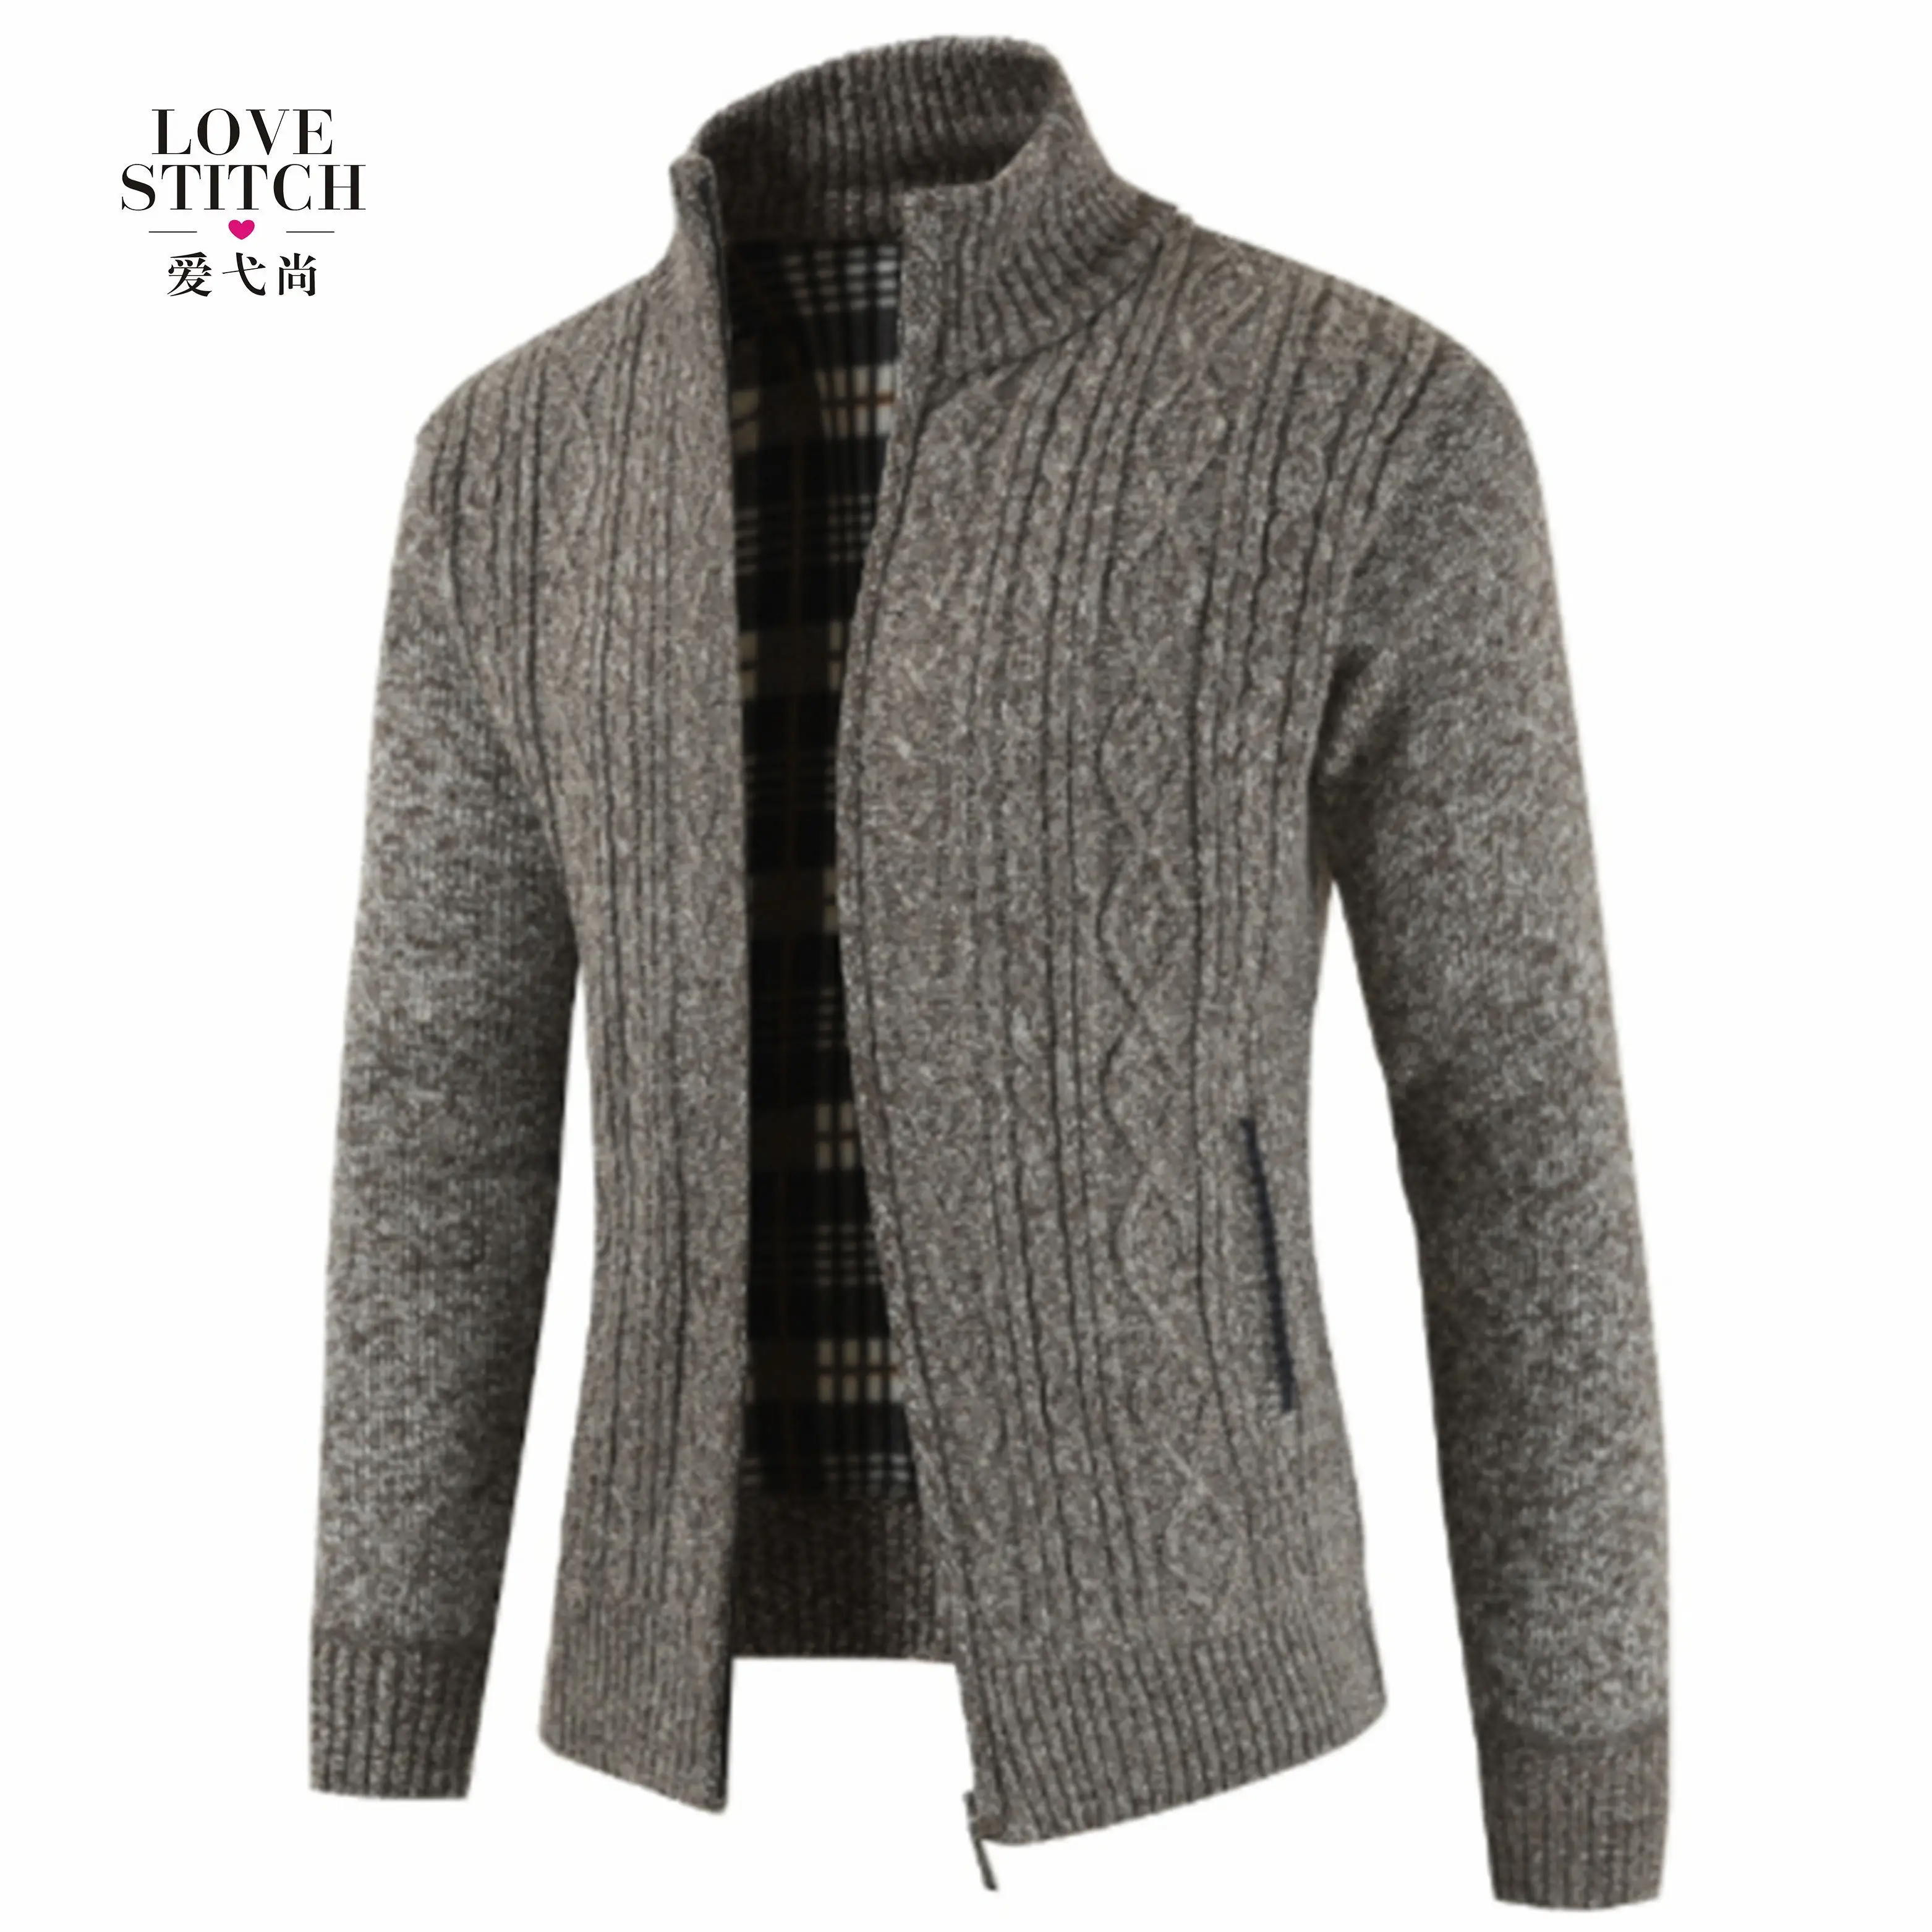 최신 디자인 유행 따뜻한 디자이너 스웨터 남성용 지퍼 카디건 스웨터 전체 맞춤형 브랜드 표준